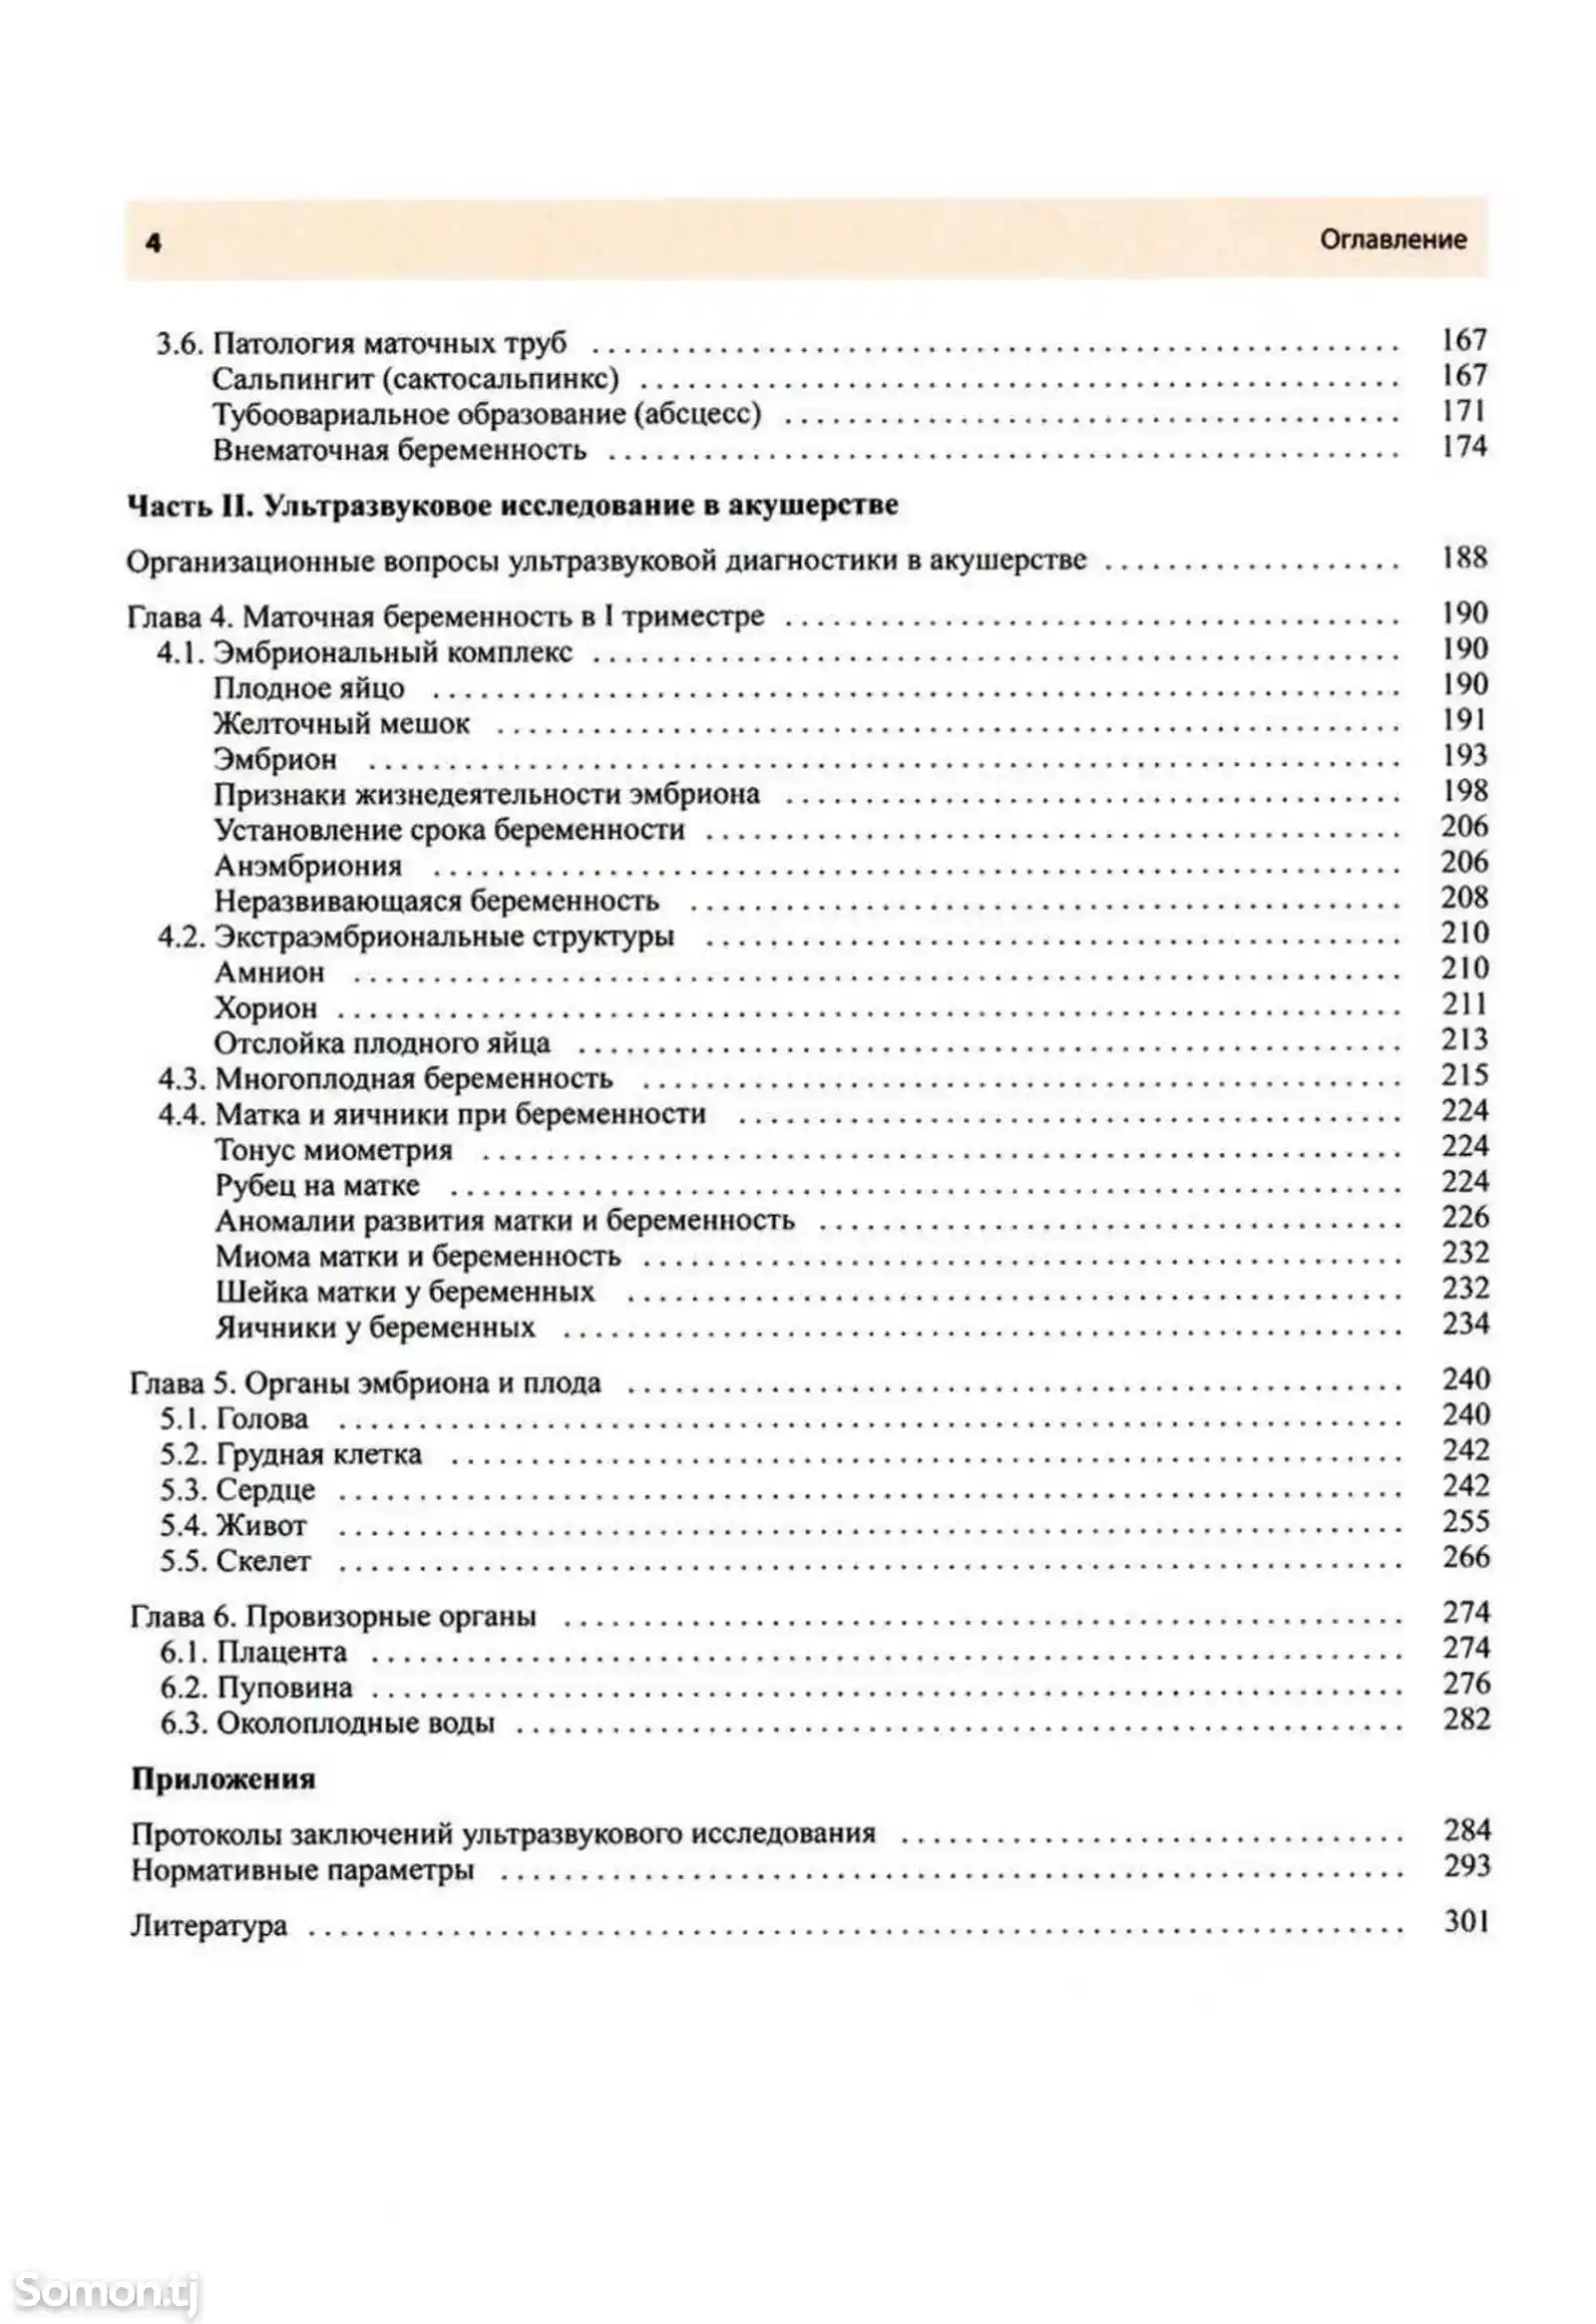 Книга руководство по ультразвуковой диагностике в акушерстве и гинекологии-3